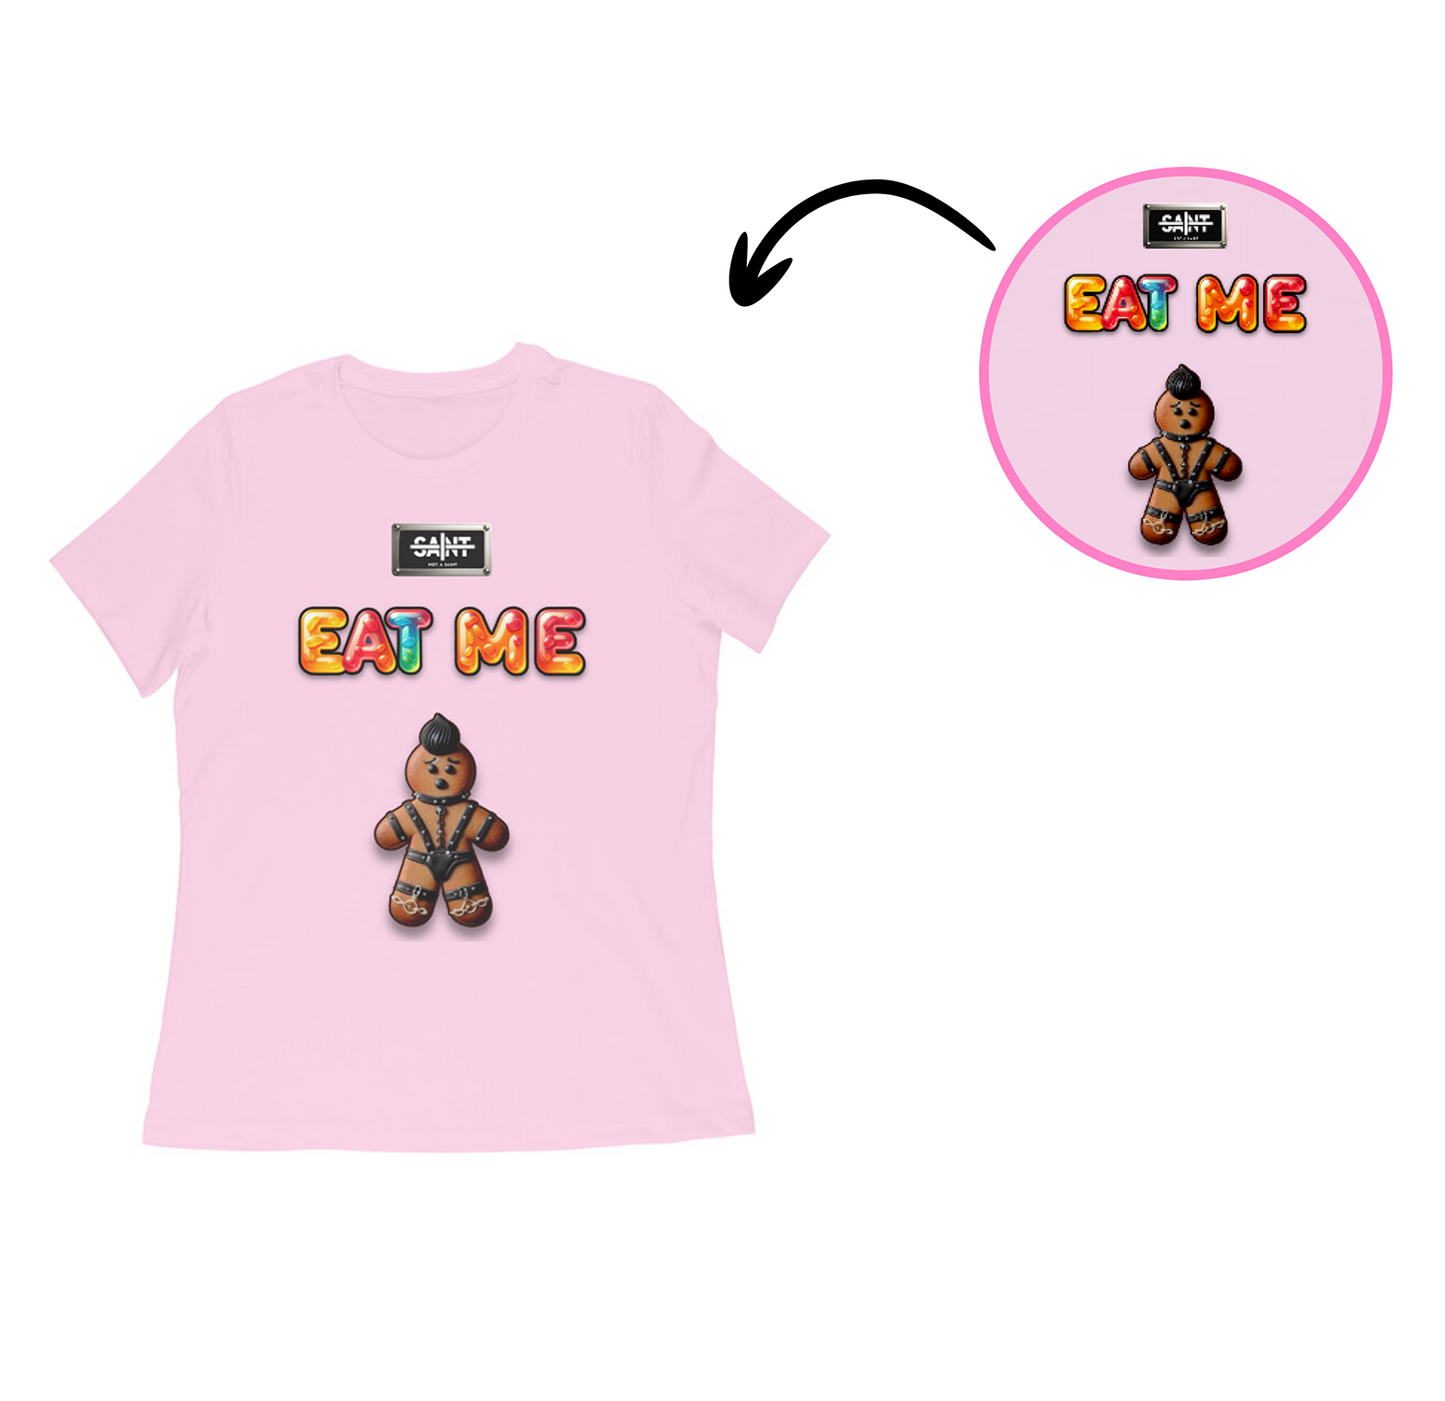 Eat Me x Not a Saint - Women's T shirt